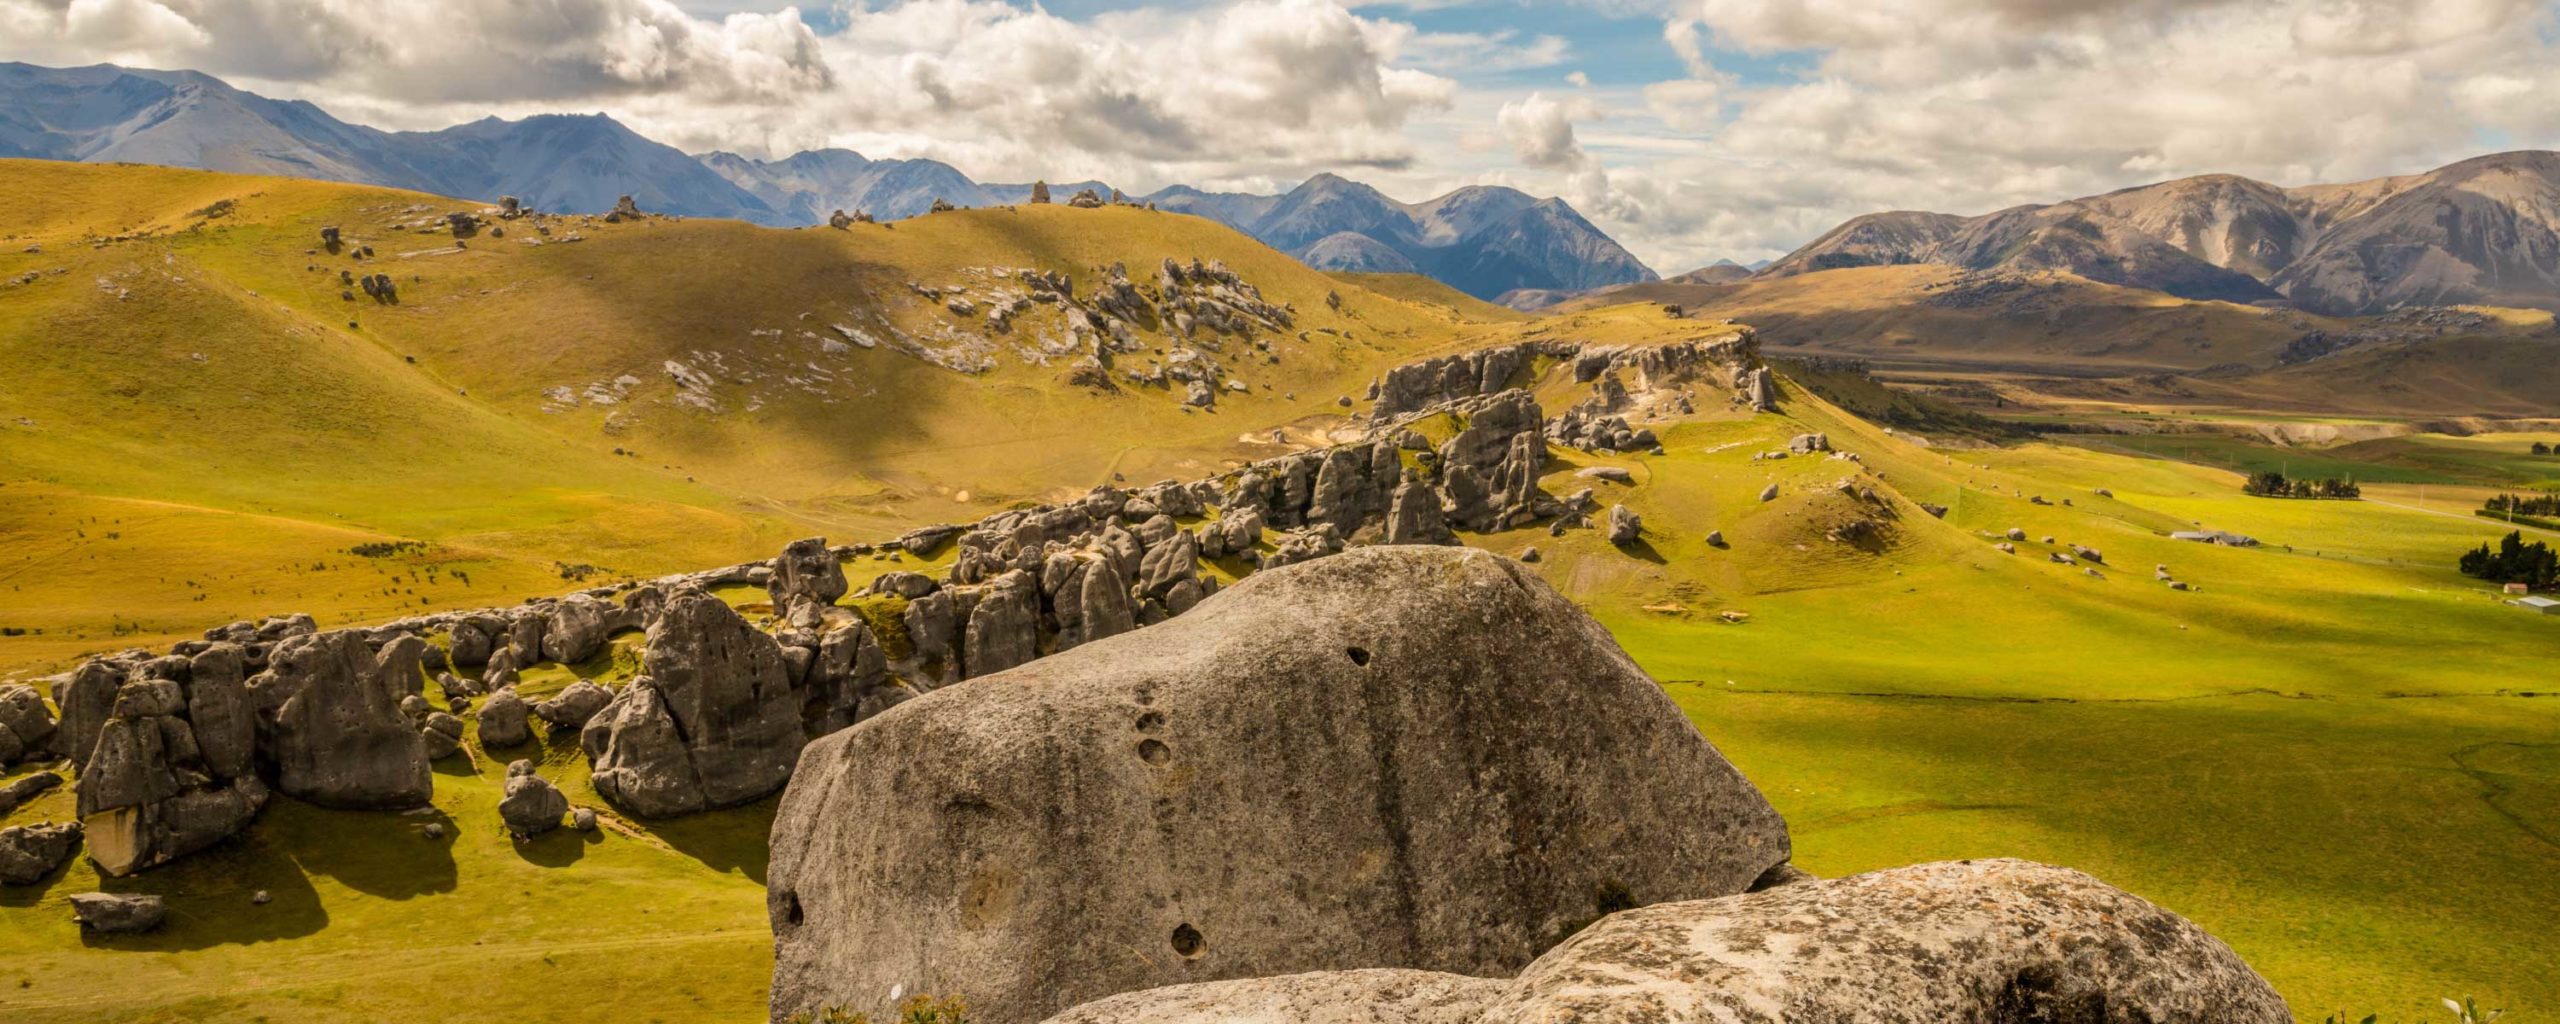 odd shaped rocks in a hilly field